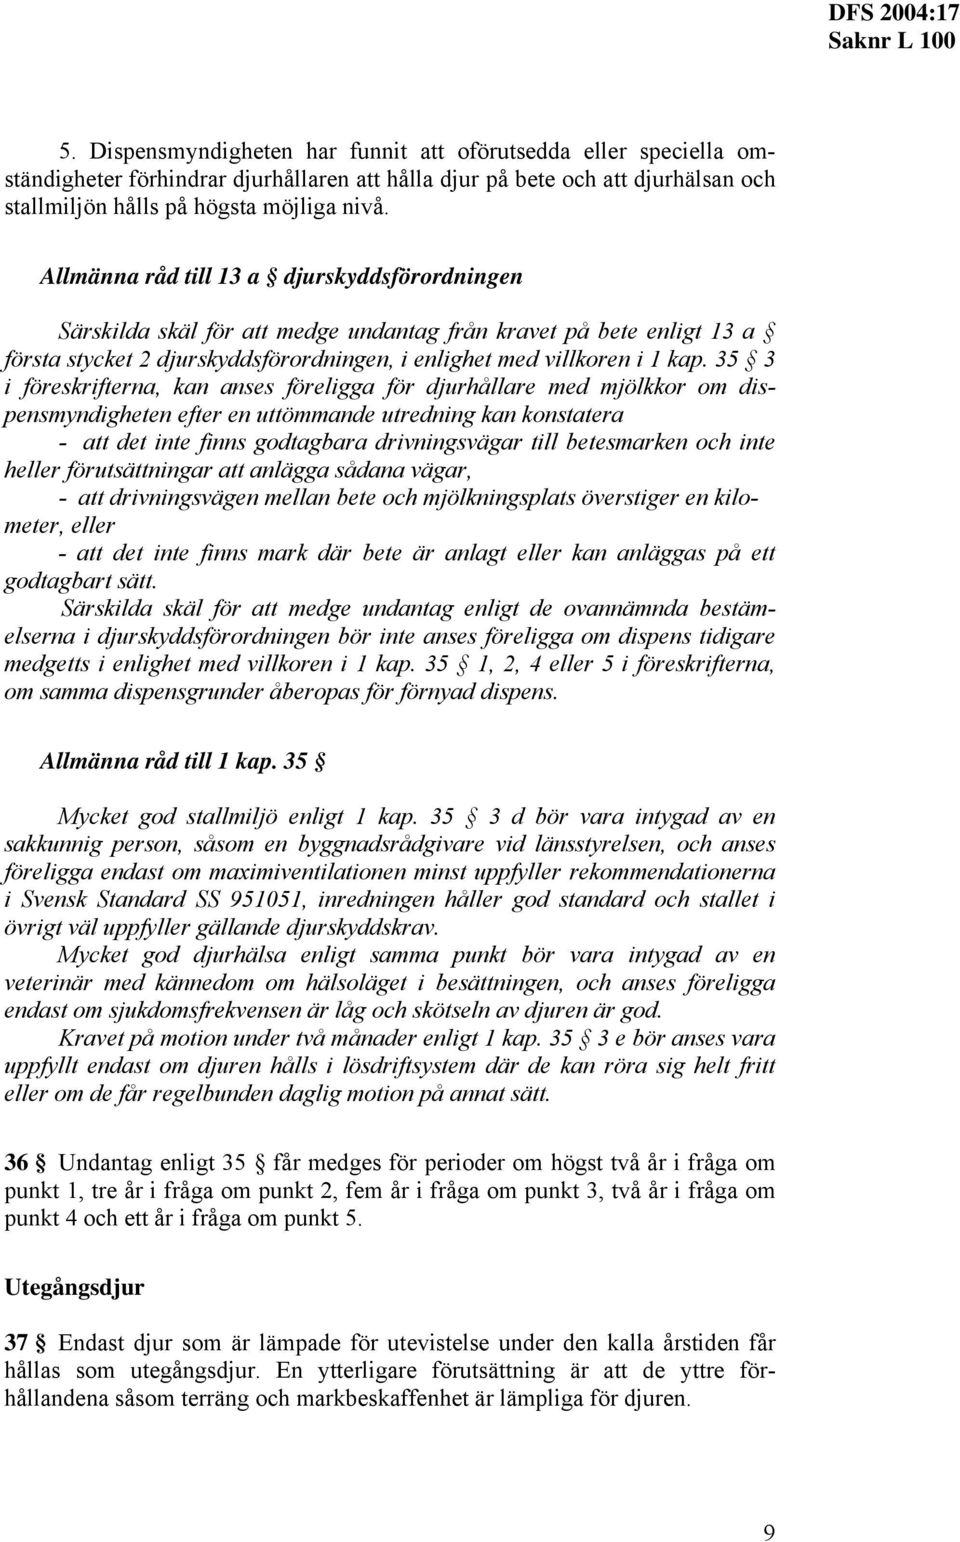 35 3 i föreskrifterna, kan anses föreligga för djurhållare ed jölkkor o dispensyndigheten efter en uttöande utredning kan konstatera - att det inte finns godtagbara drivningsvägar till betesarken och